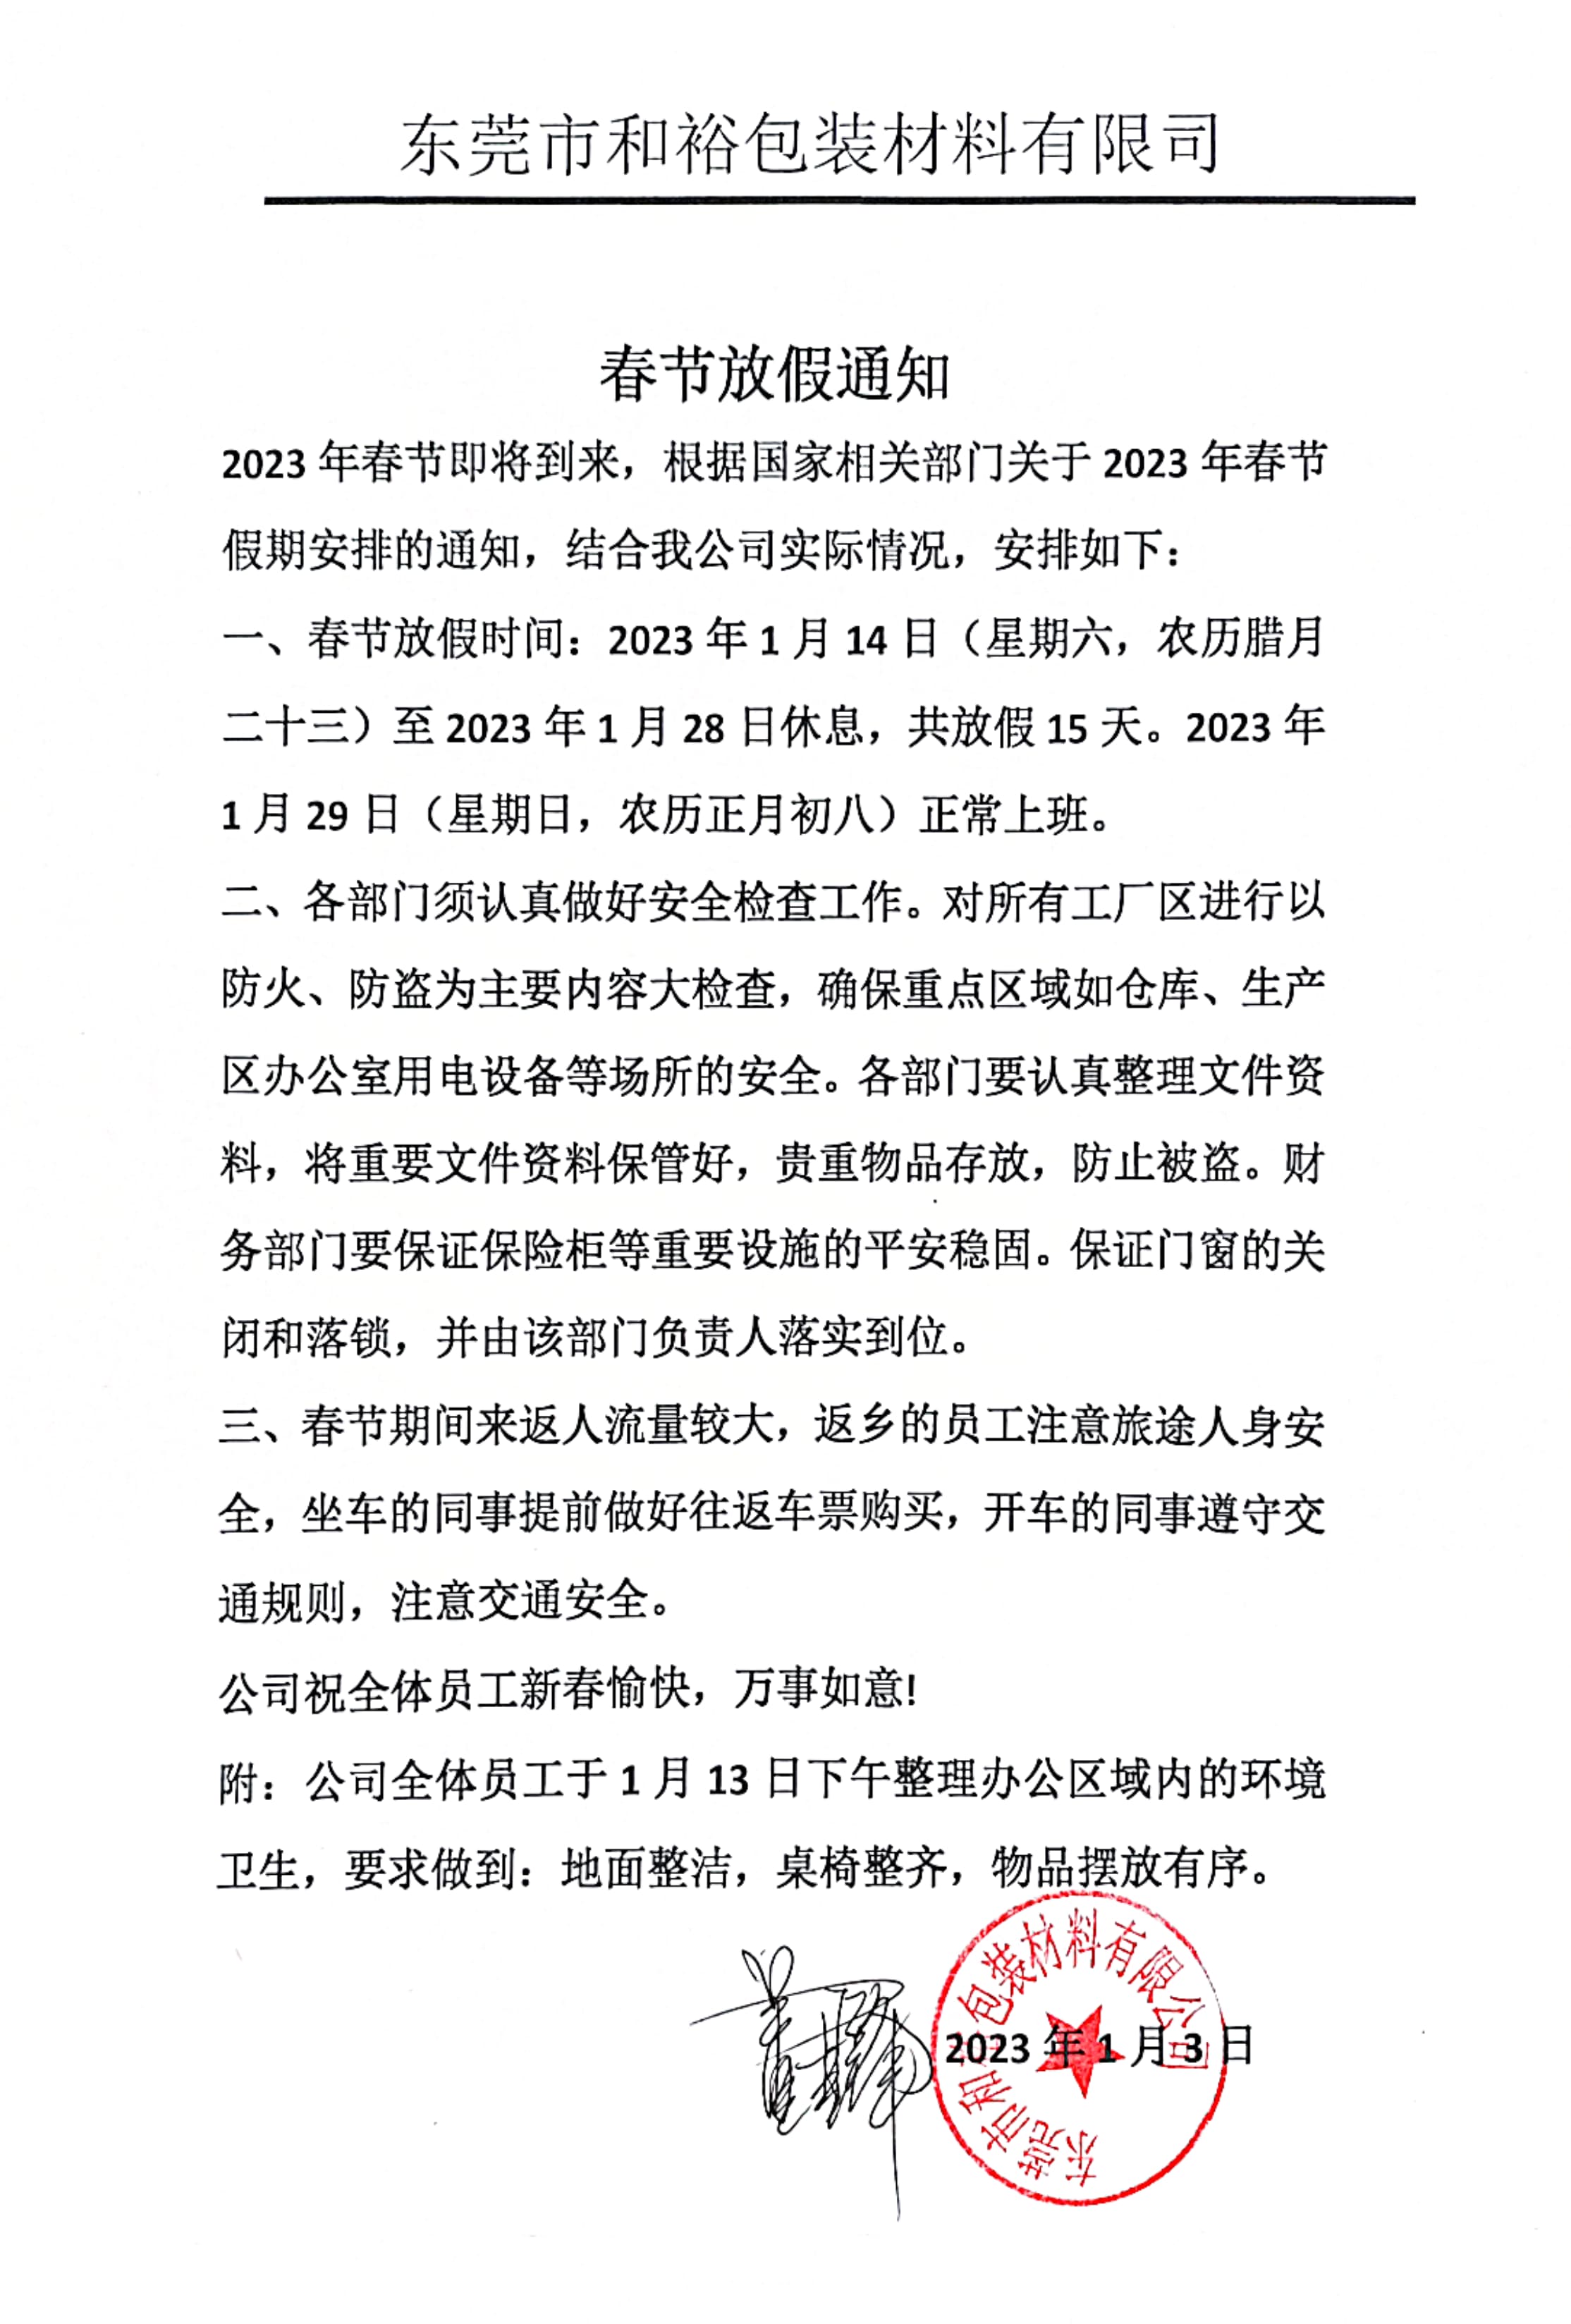 惠州2023年和裕包装春节放假通知